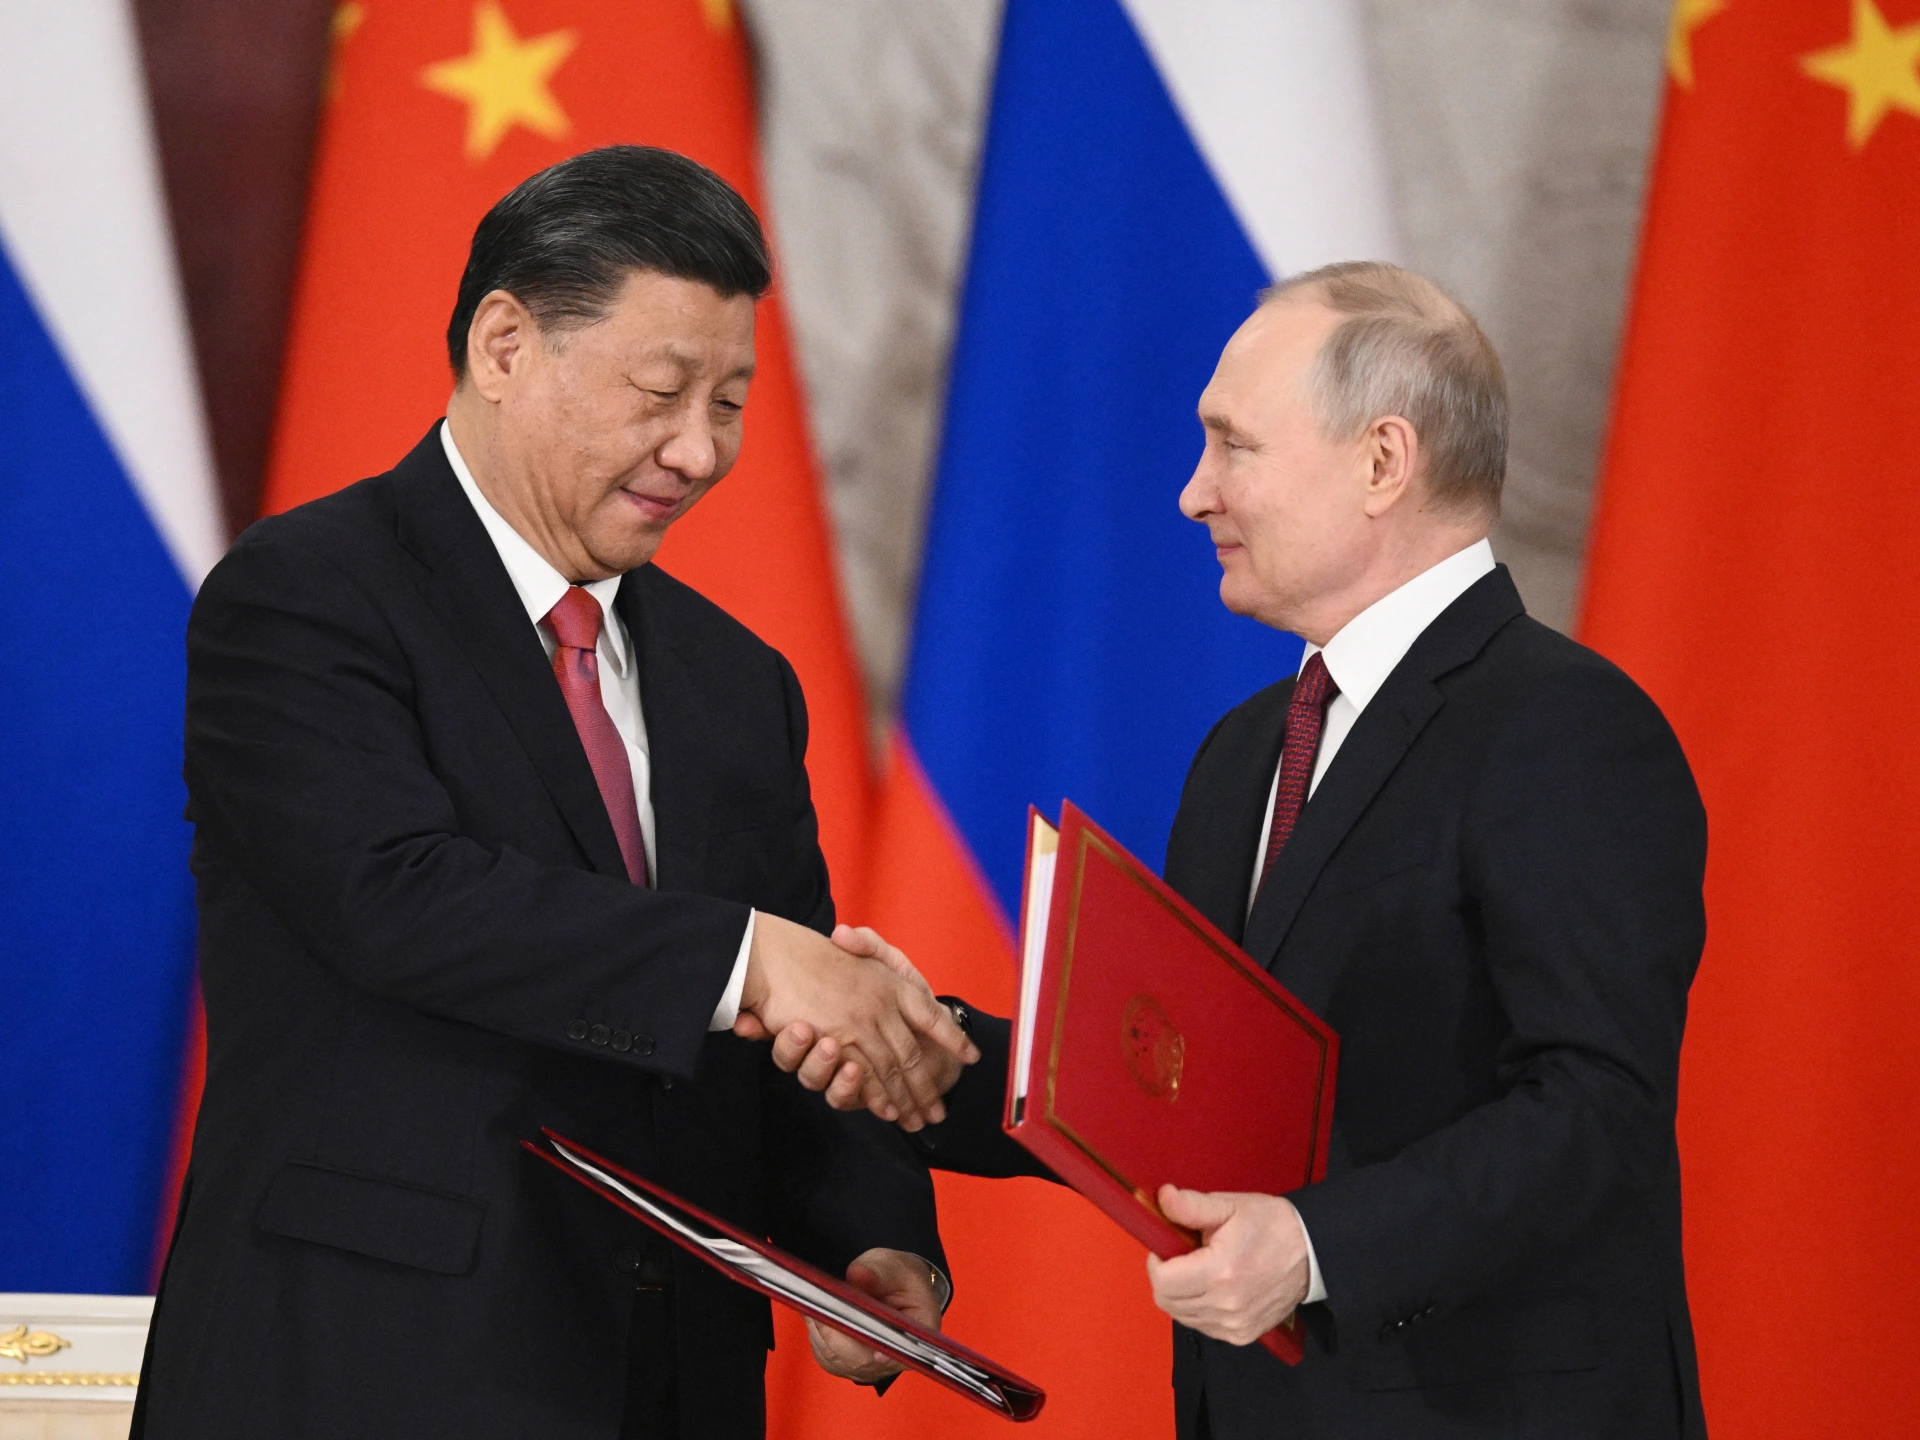 Calda îmbrățișare dintre Xi și Putin în China reprezintă un afront la adresa Occidentului